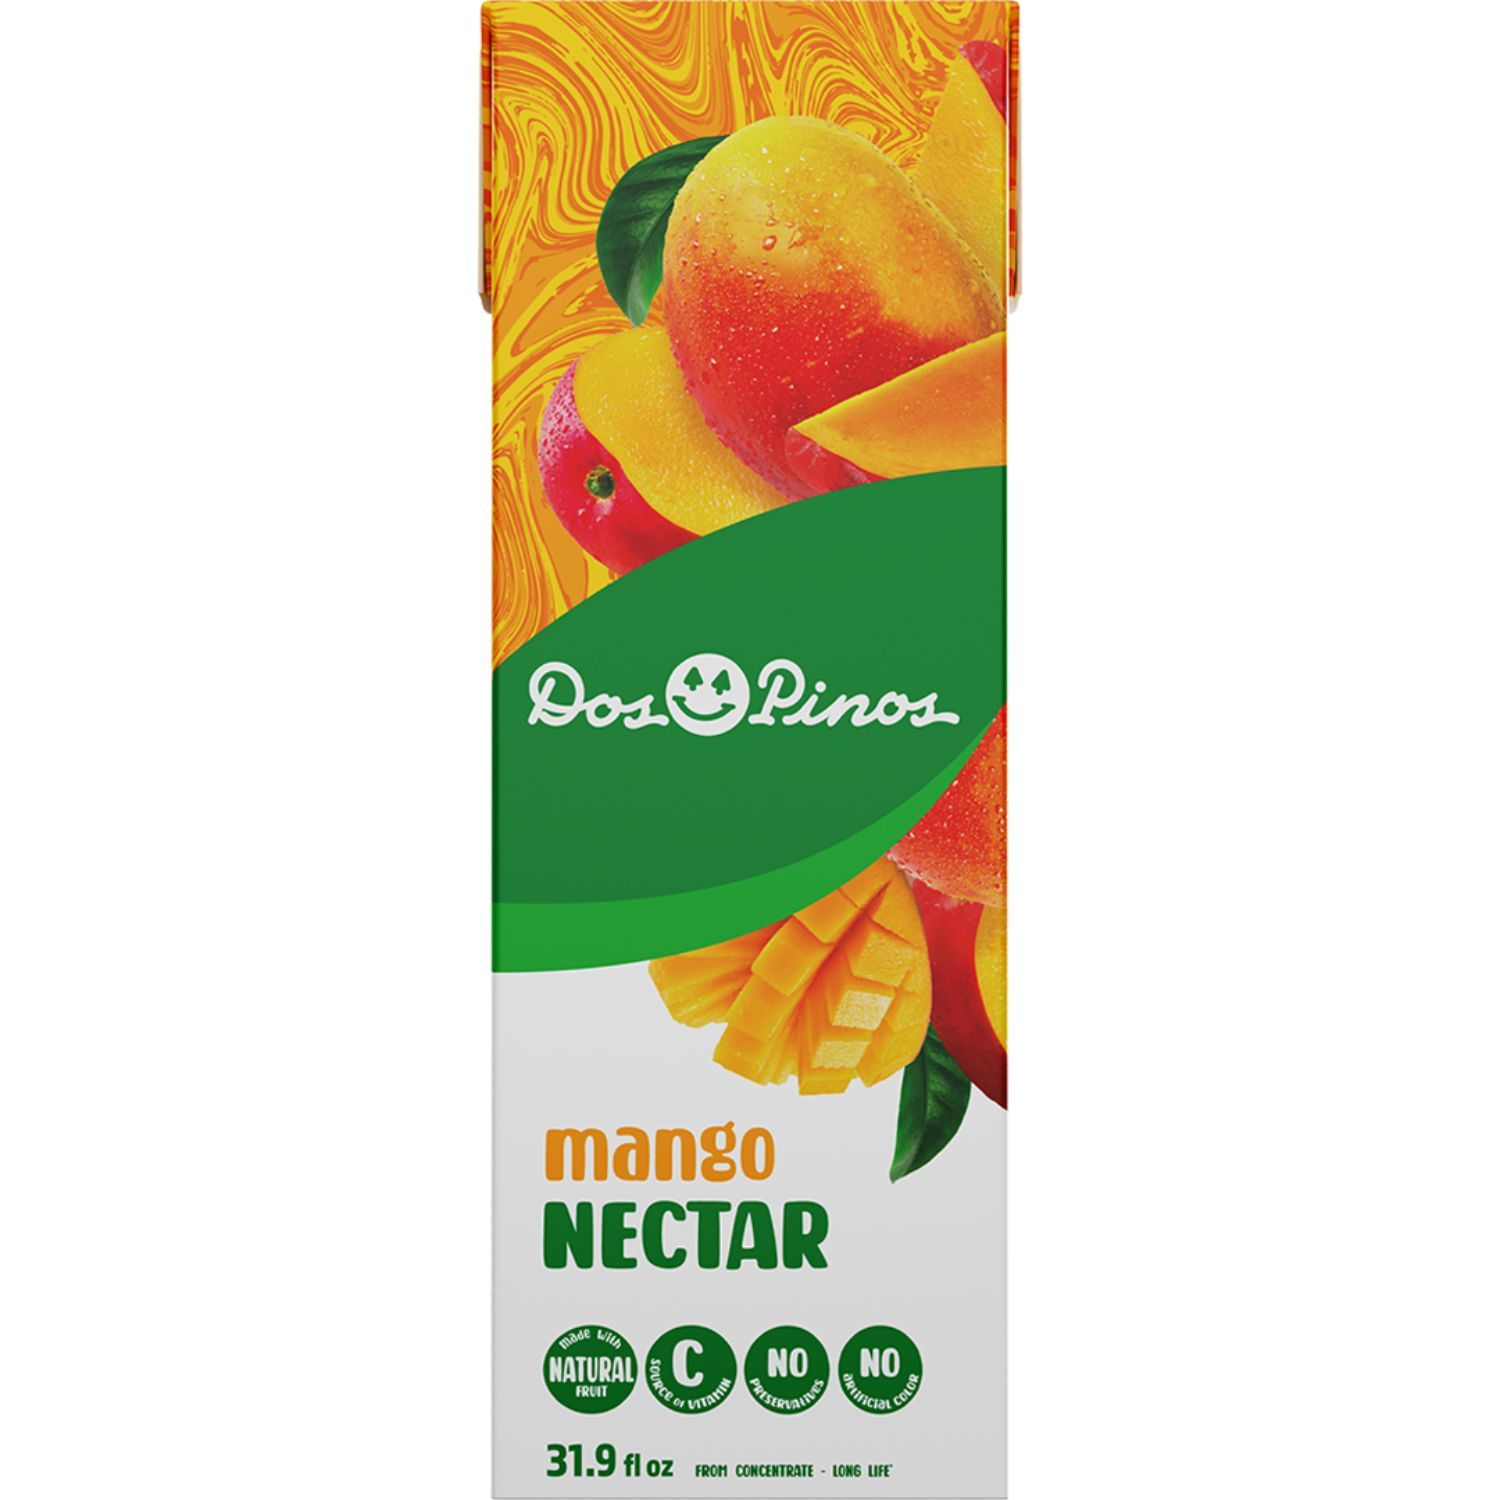 Nectar Mango Dos Pinos Tetra Brick 946 Ml